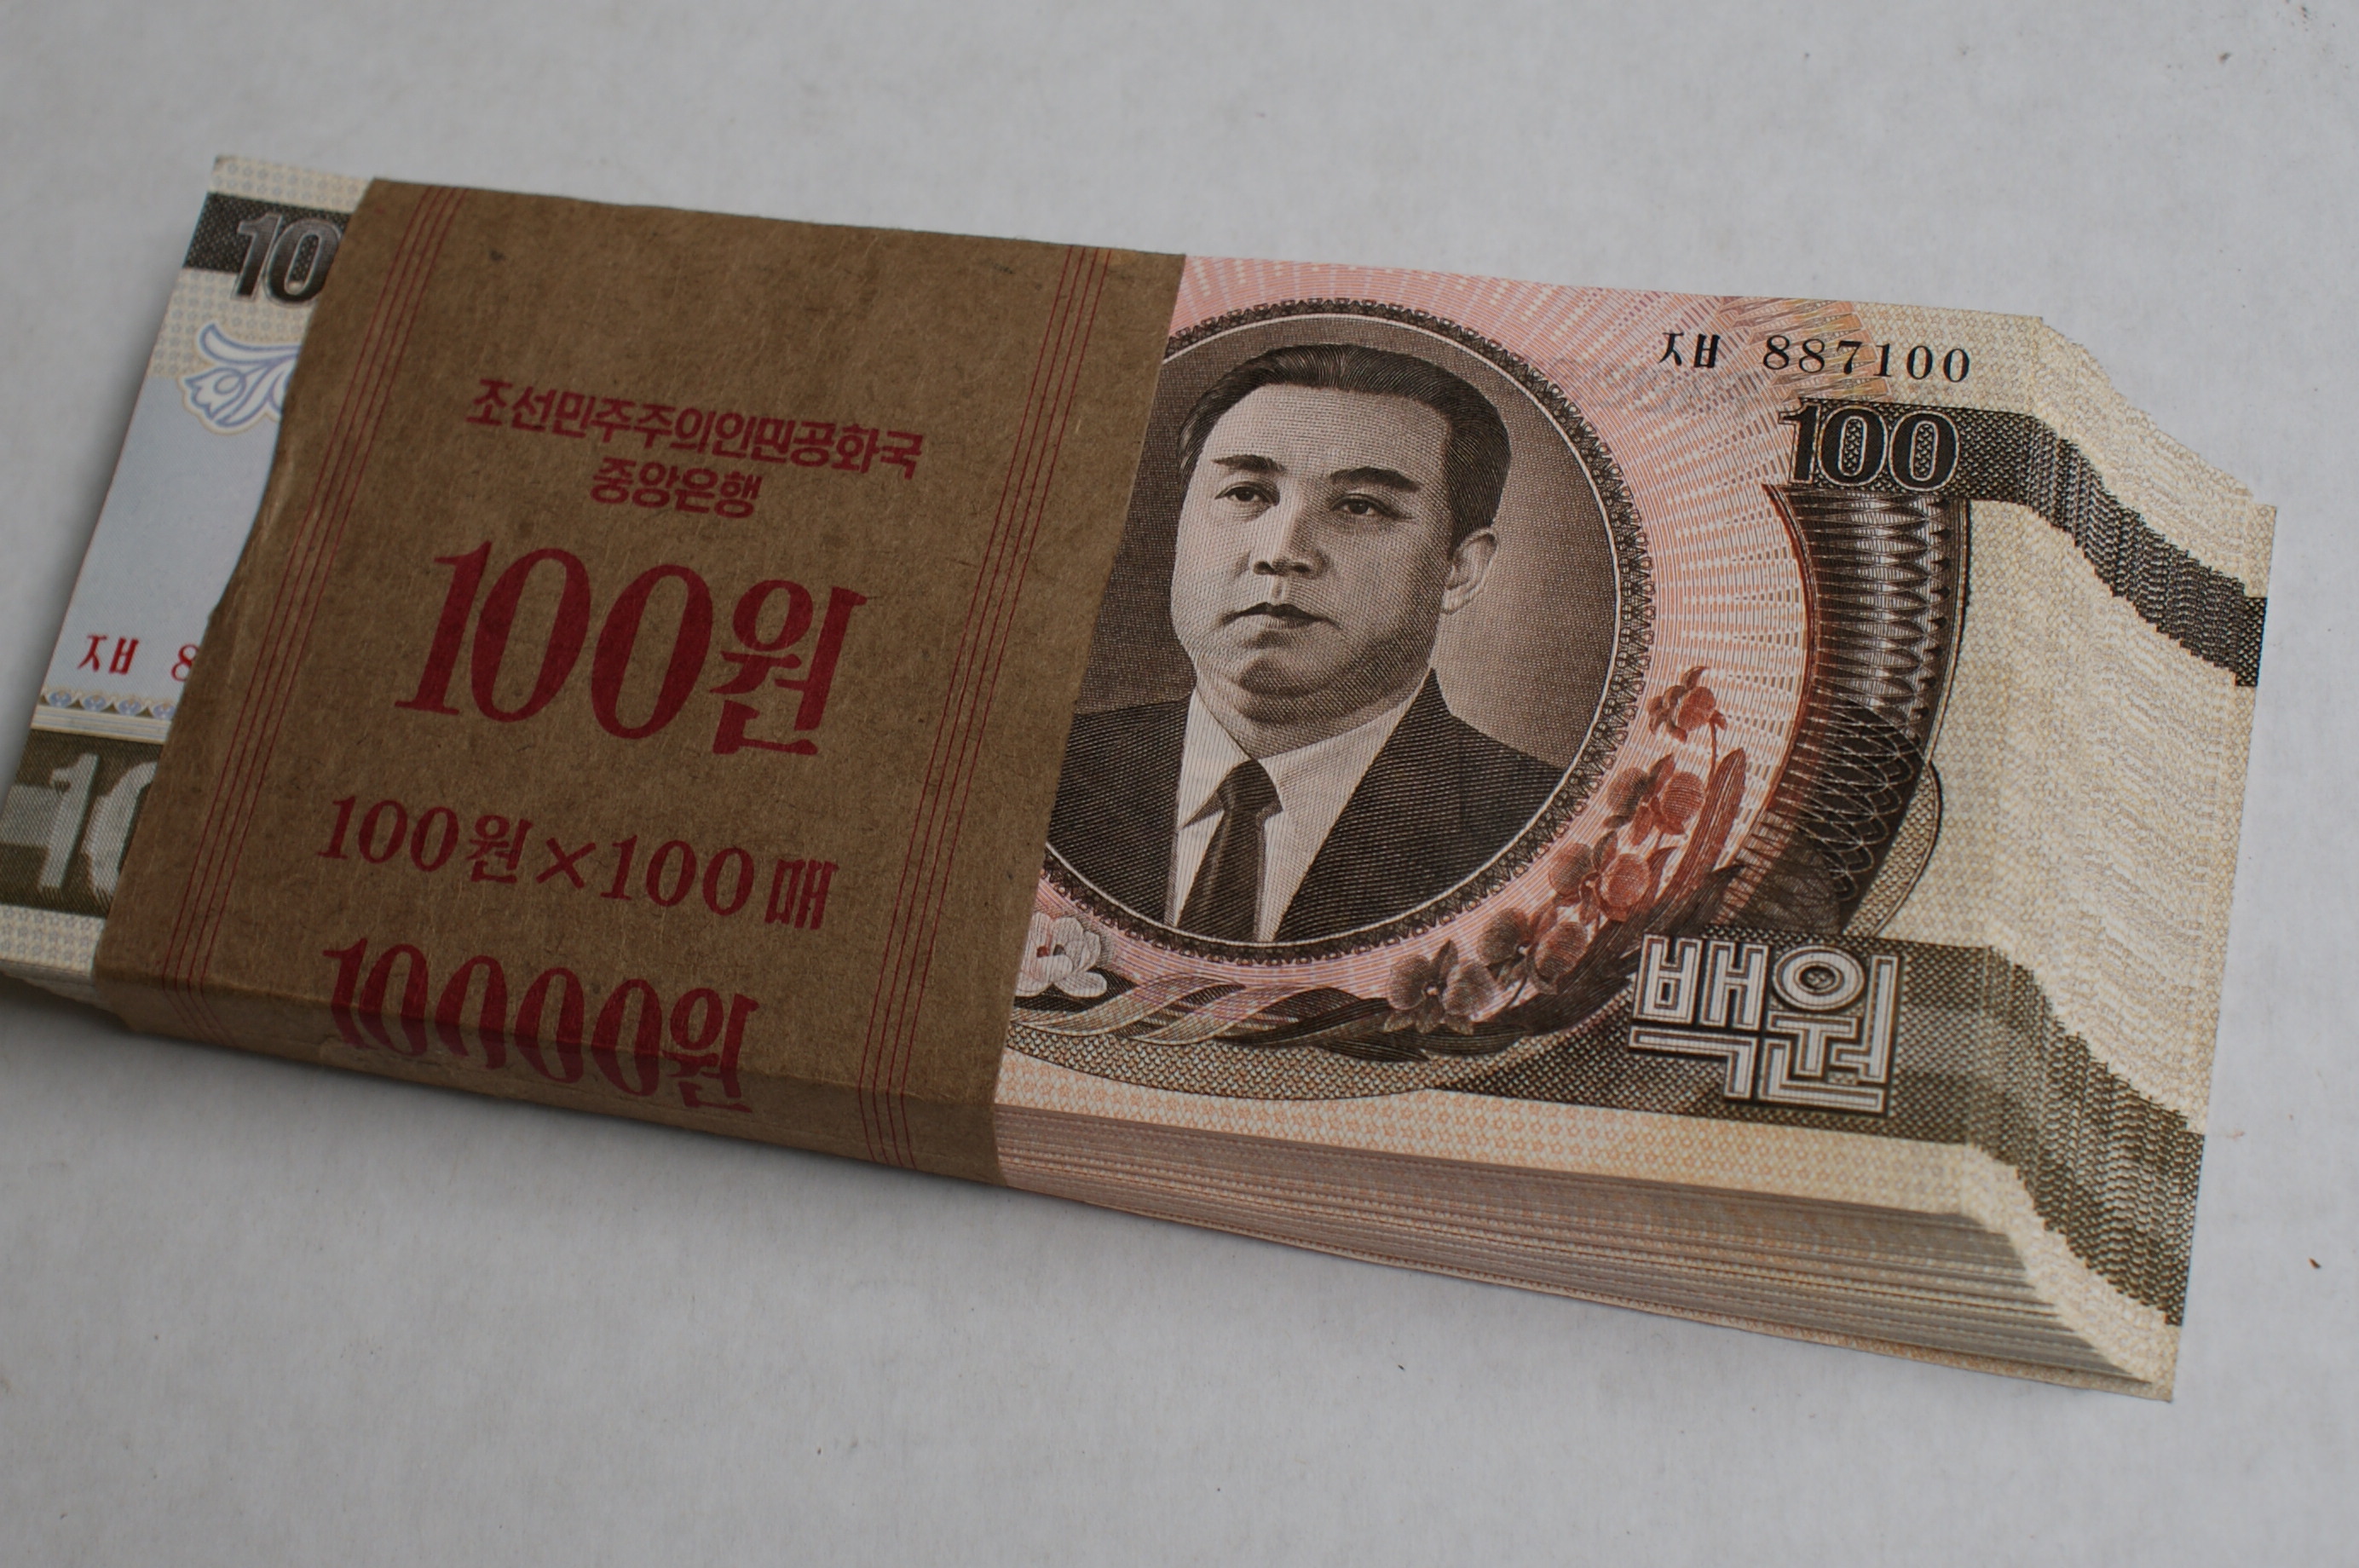 国民の外貨タンス預金を狙う北朝鮮政府と、意地でも出そうとしない人々 | DailyNK Japan（デイリーNKジャパン）